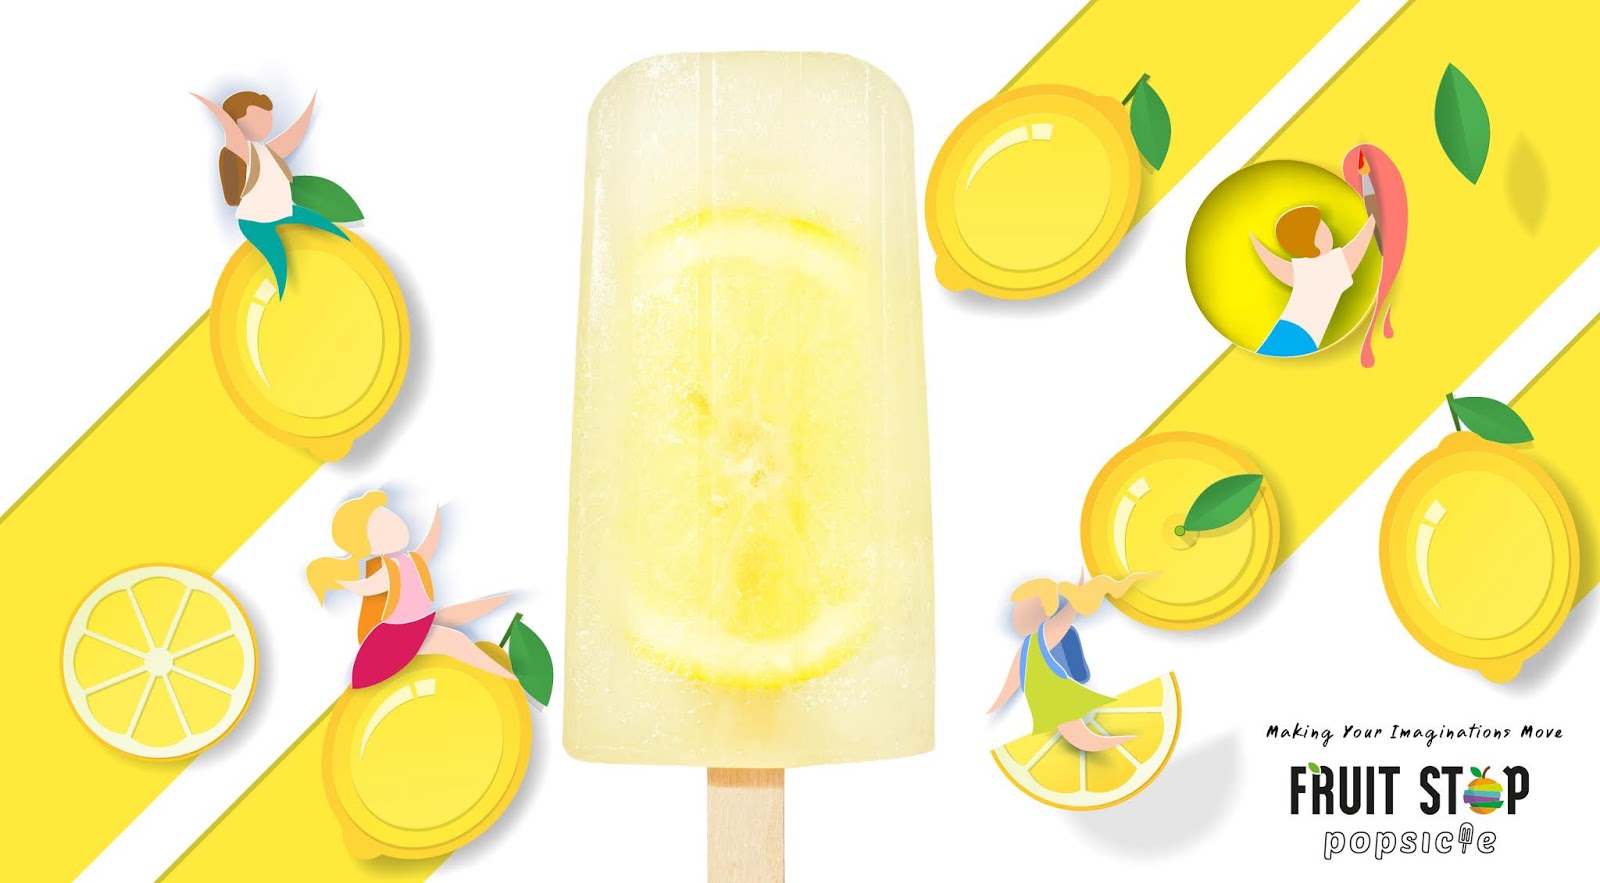 清新口味的Fruit Stop冰棒包装设计